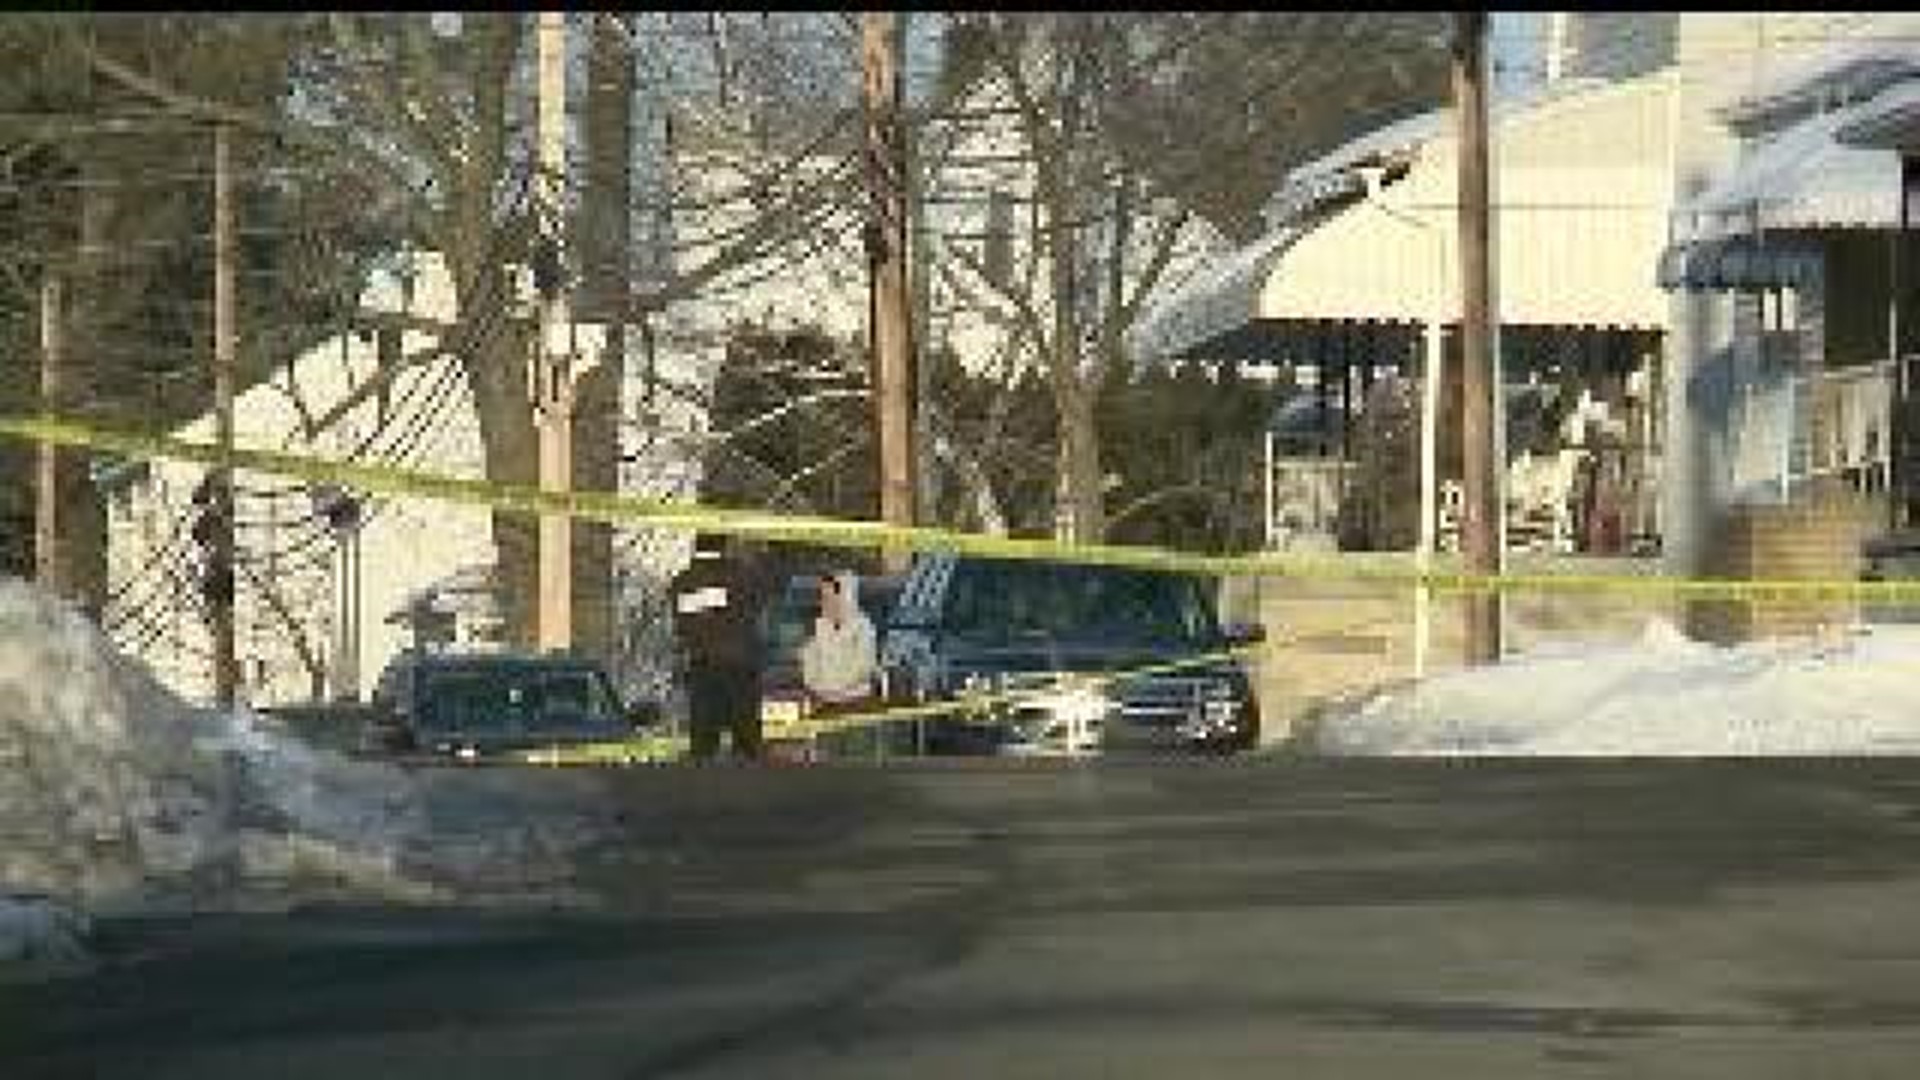 Pottsville Neighborhood Reacts To Death Investigation